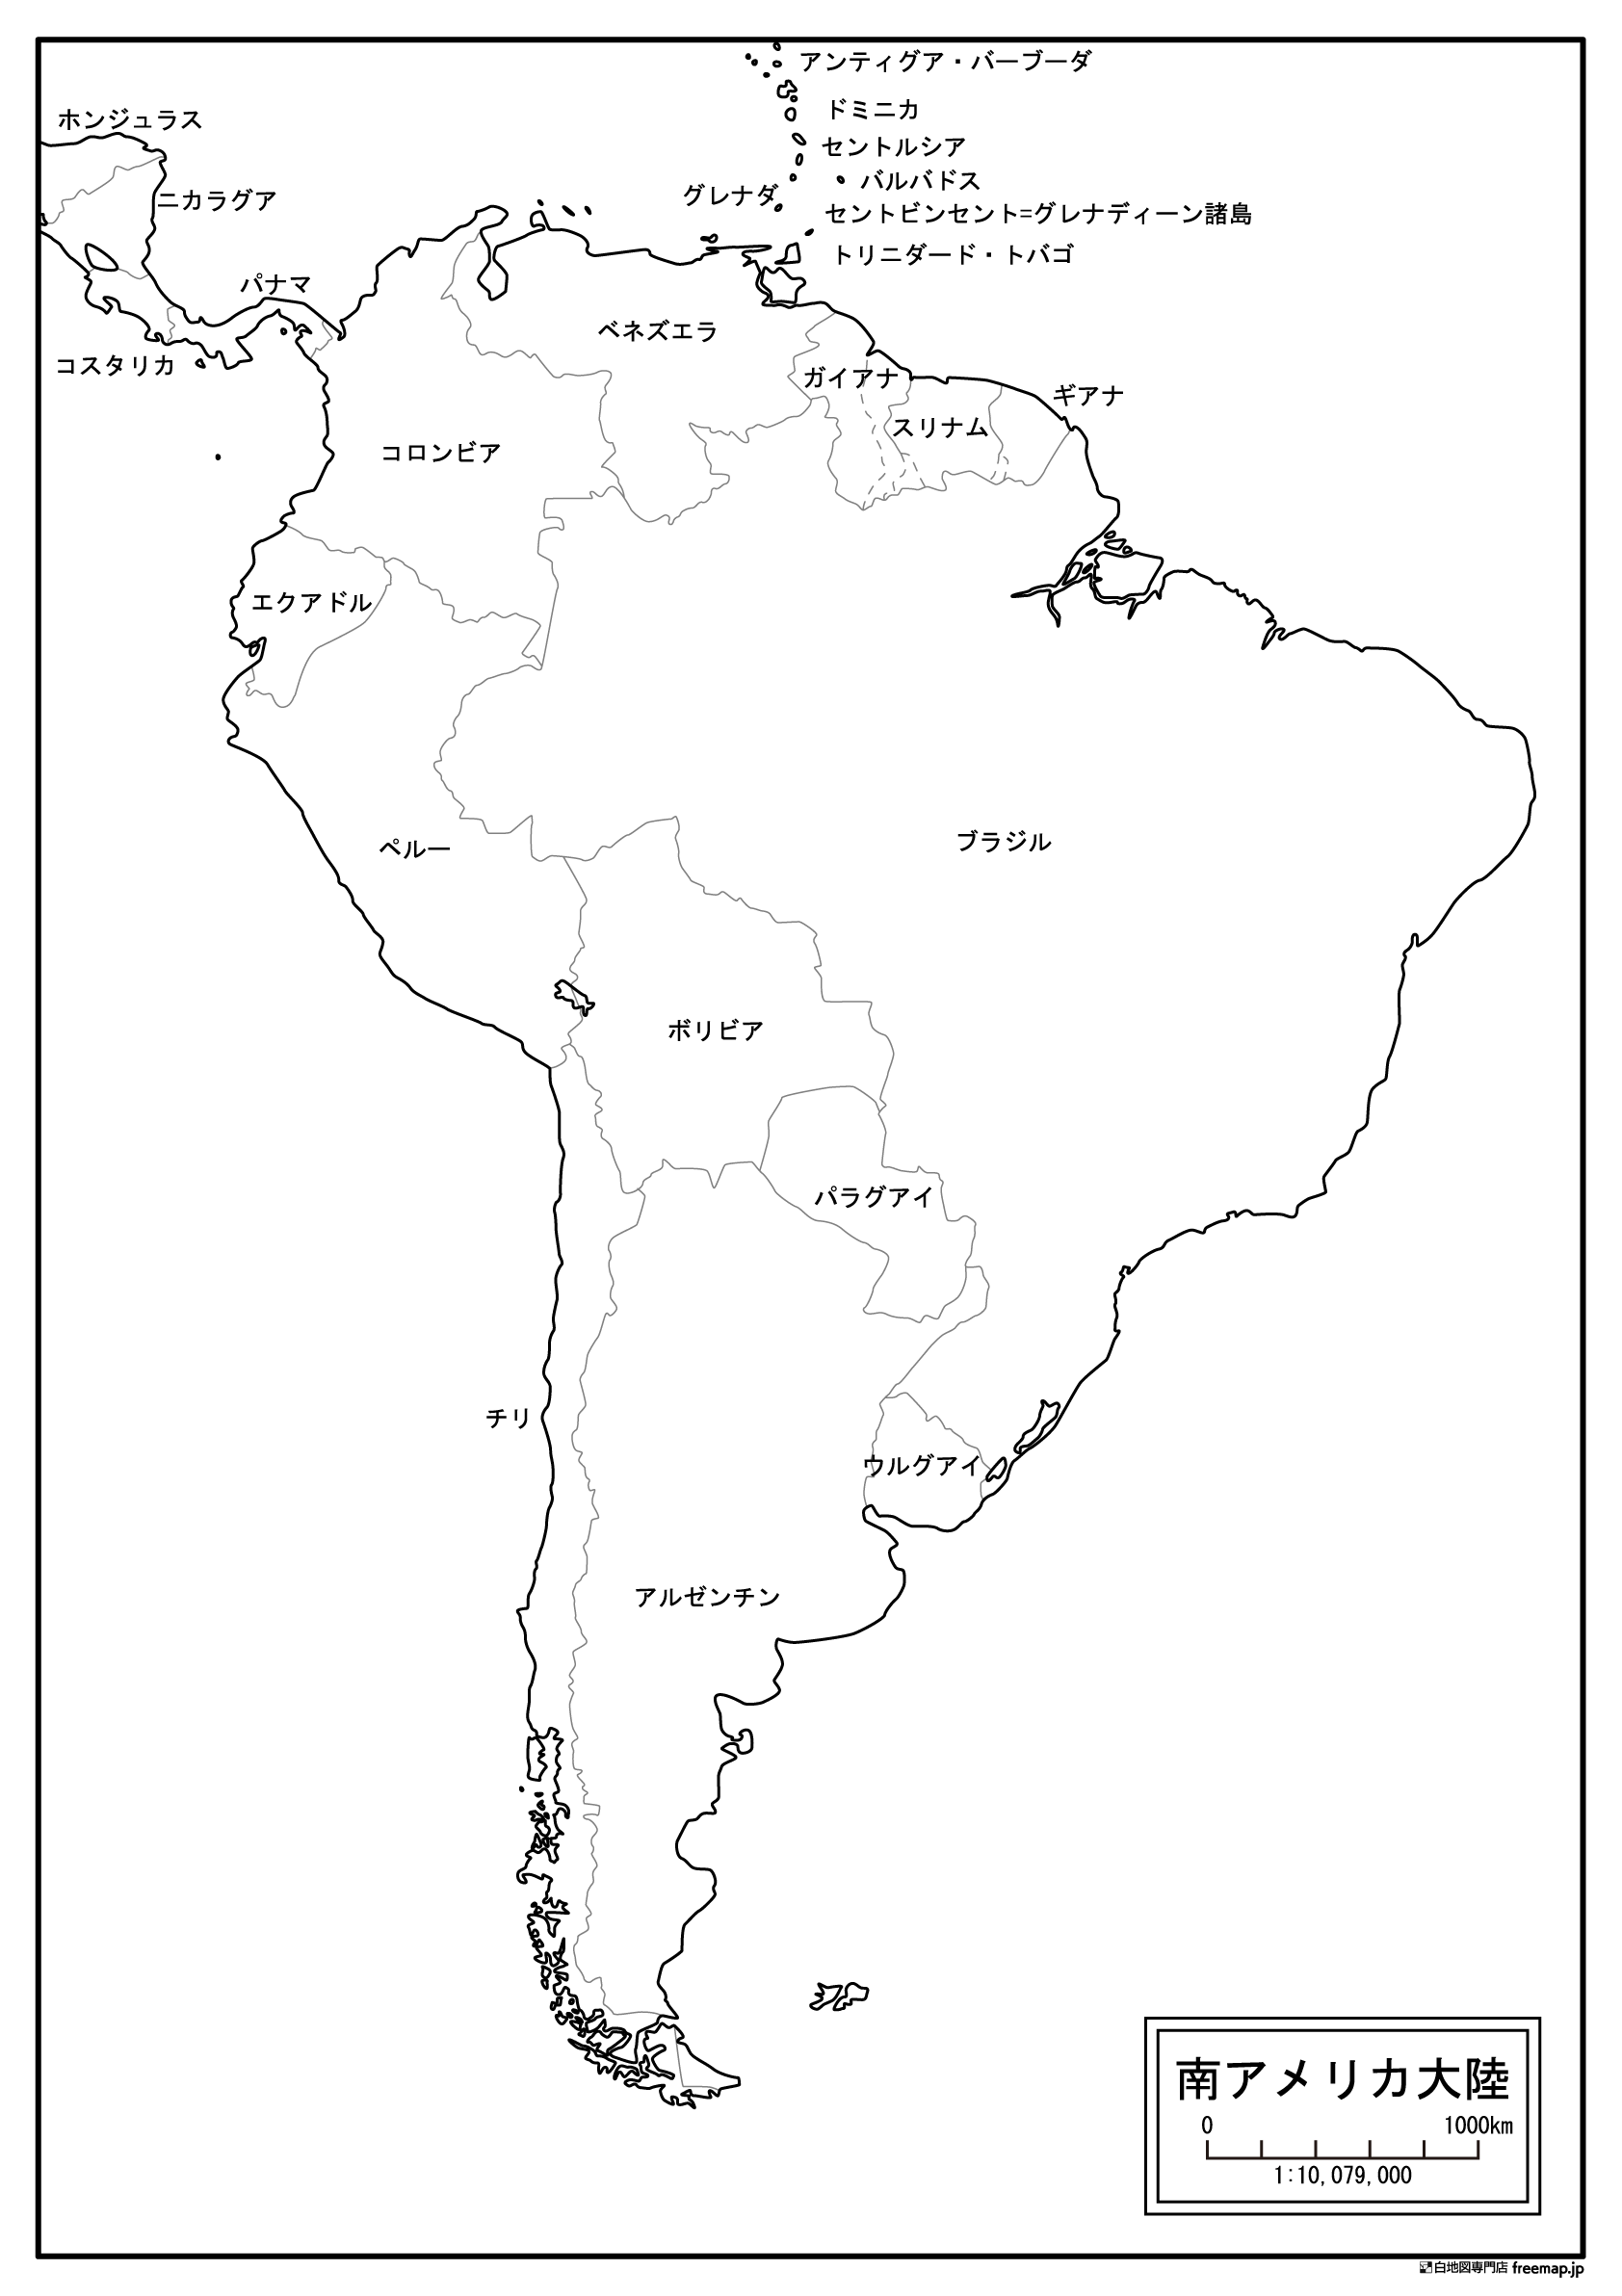 南アメリカ大陸のサムネイル